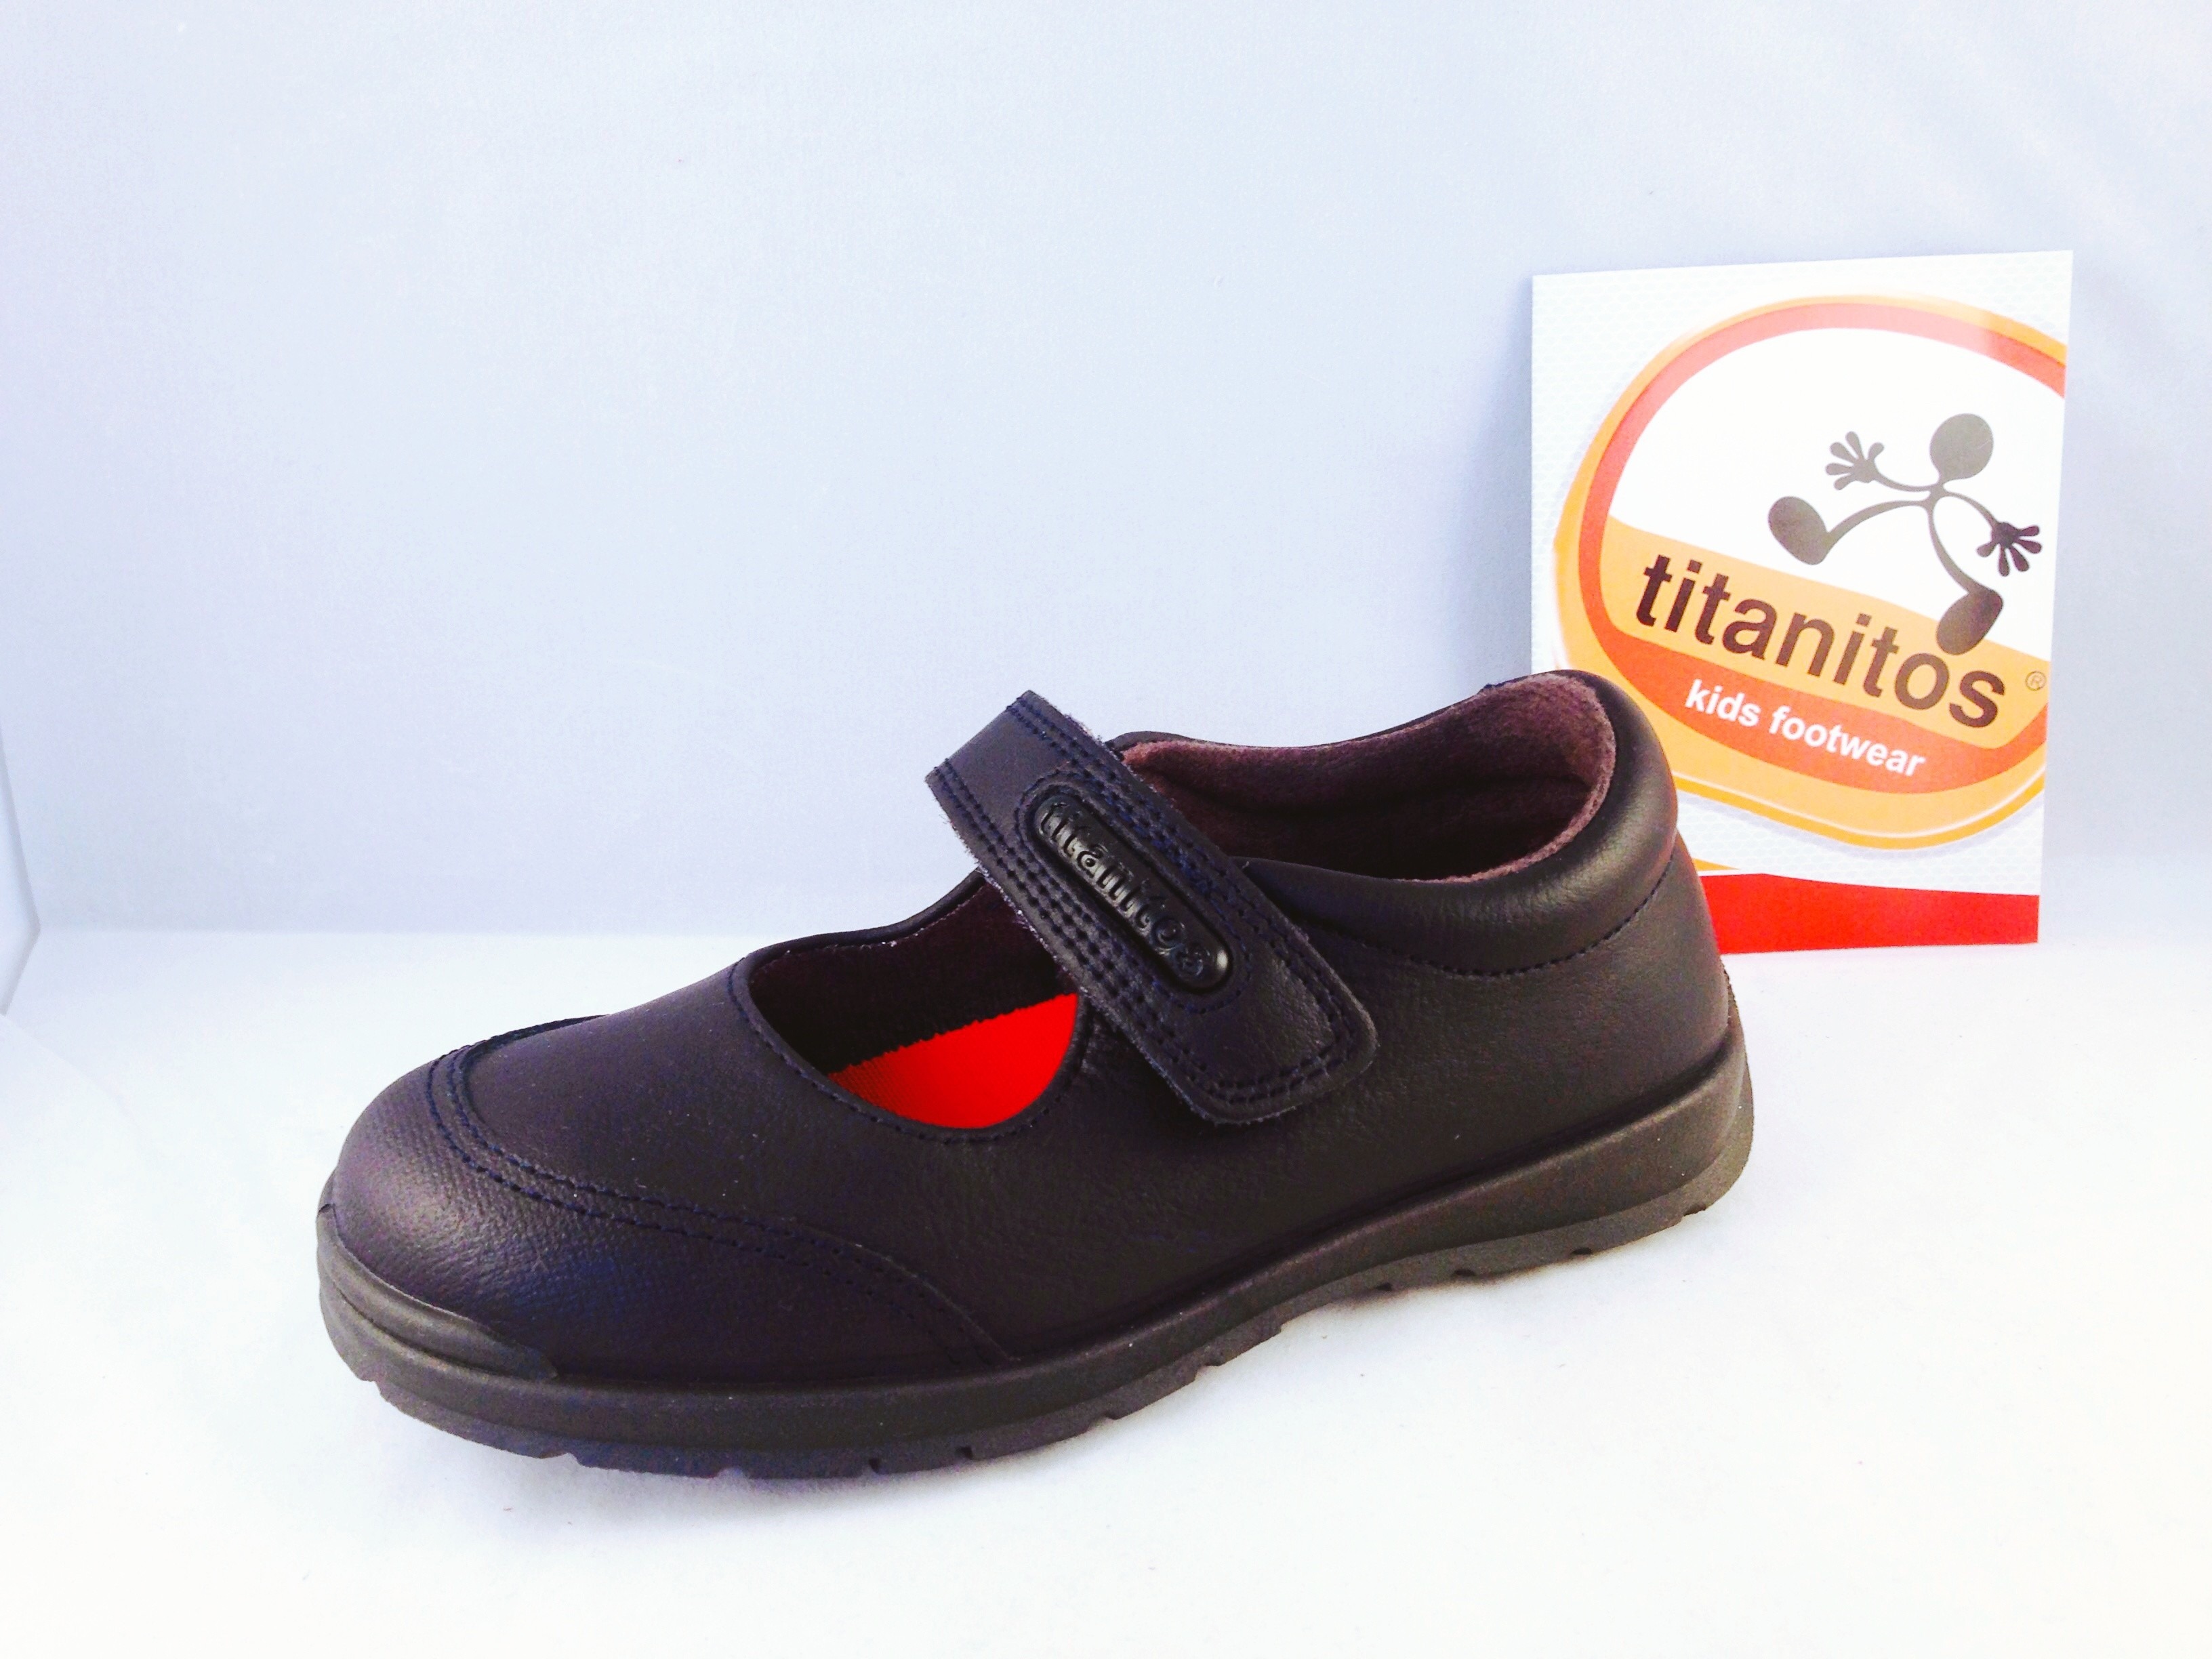 Comprar zapatos Titanitos para niños - Pequeña Huella